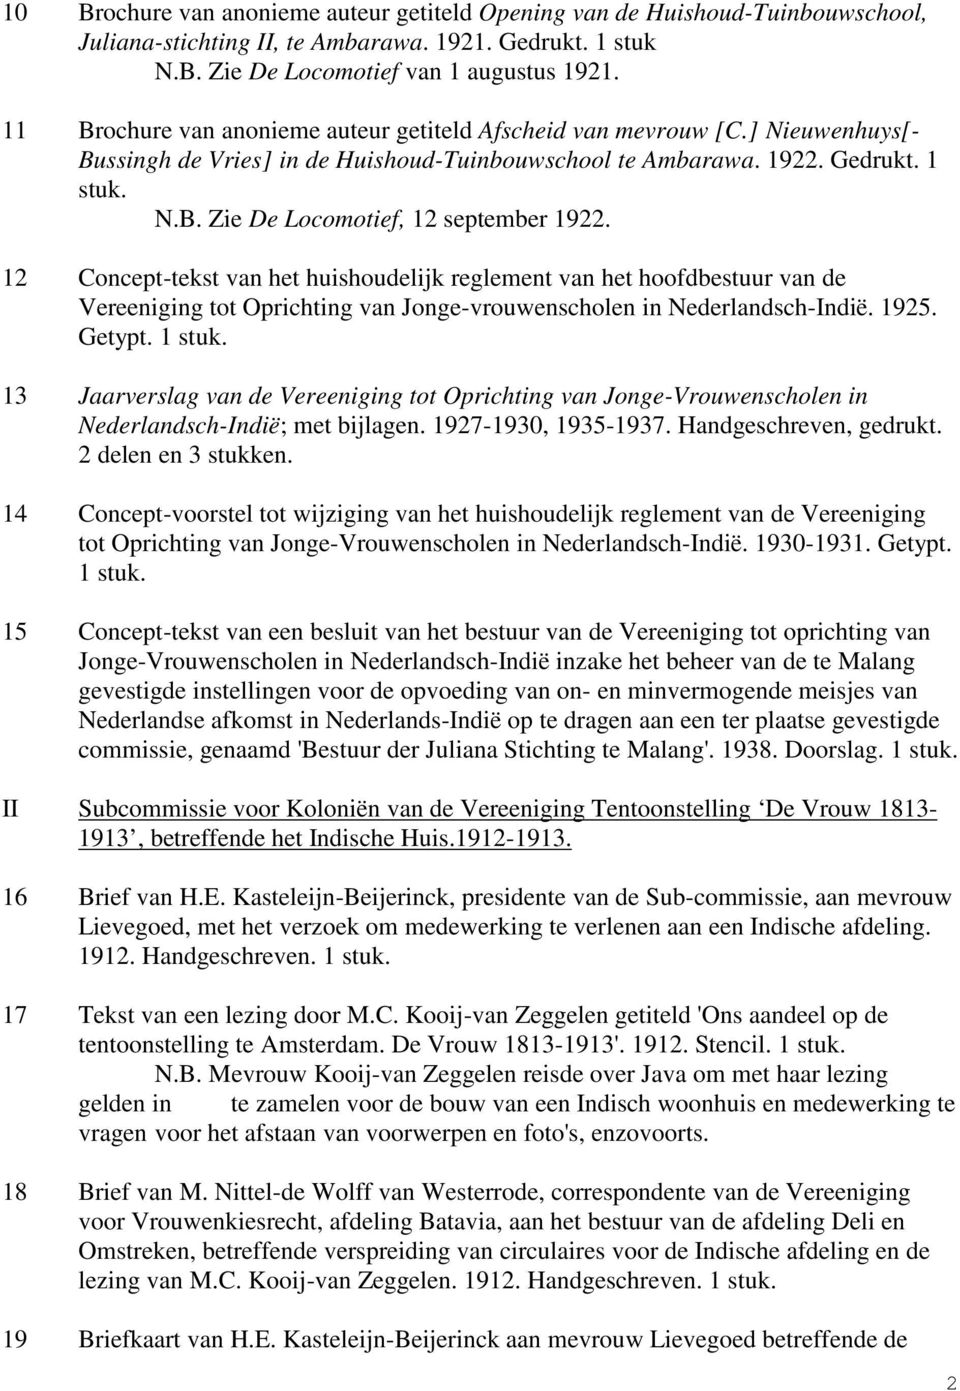 12 Concept-tekst van het huishoudelijk reglement van het hoofdbestuur van de Vereeniging tot Oprichting van Jonge-vrouwenscholen in Nederlandsch-Indië. 1925. Getypt. 1 stuk.